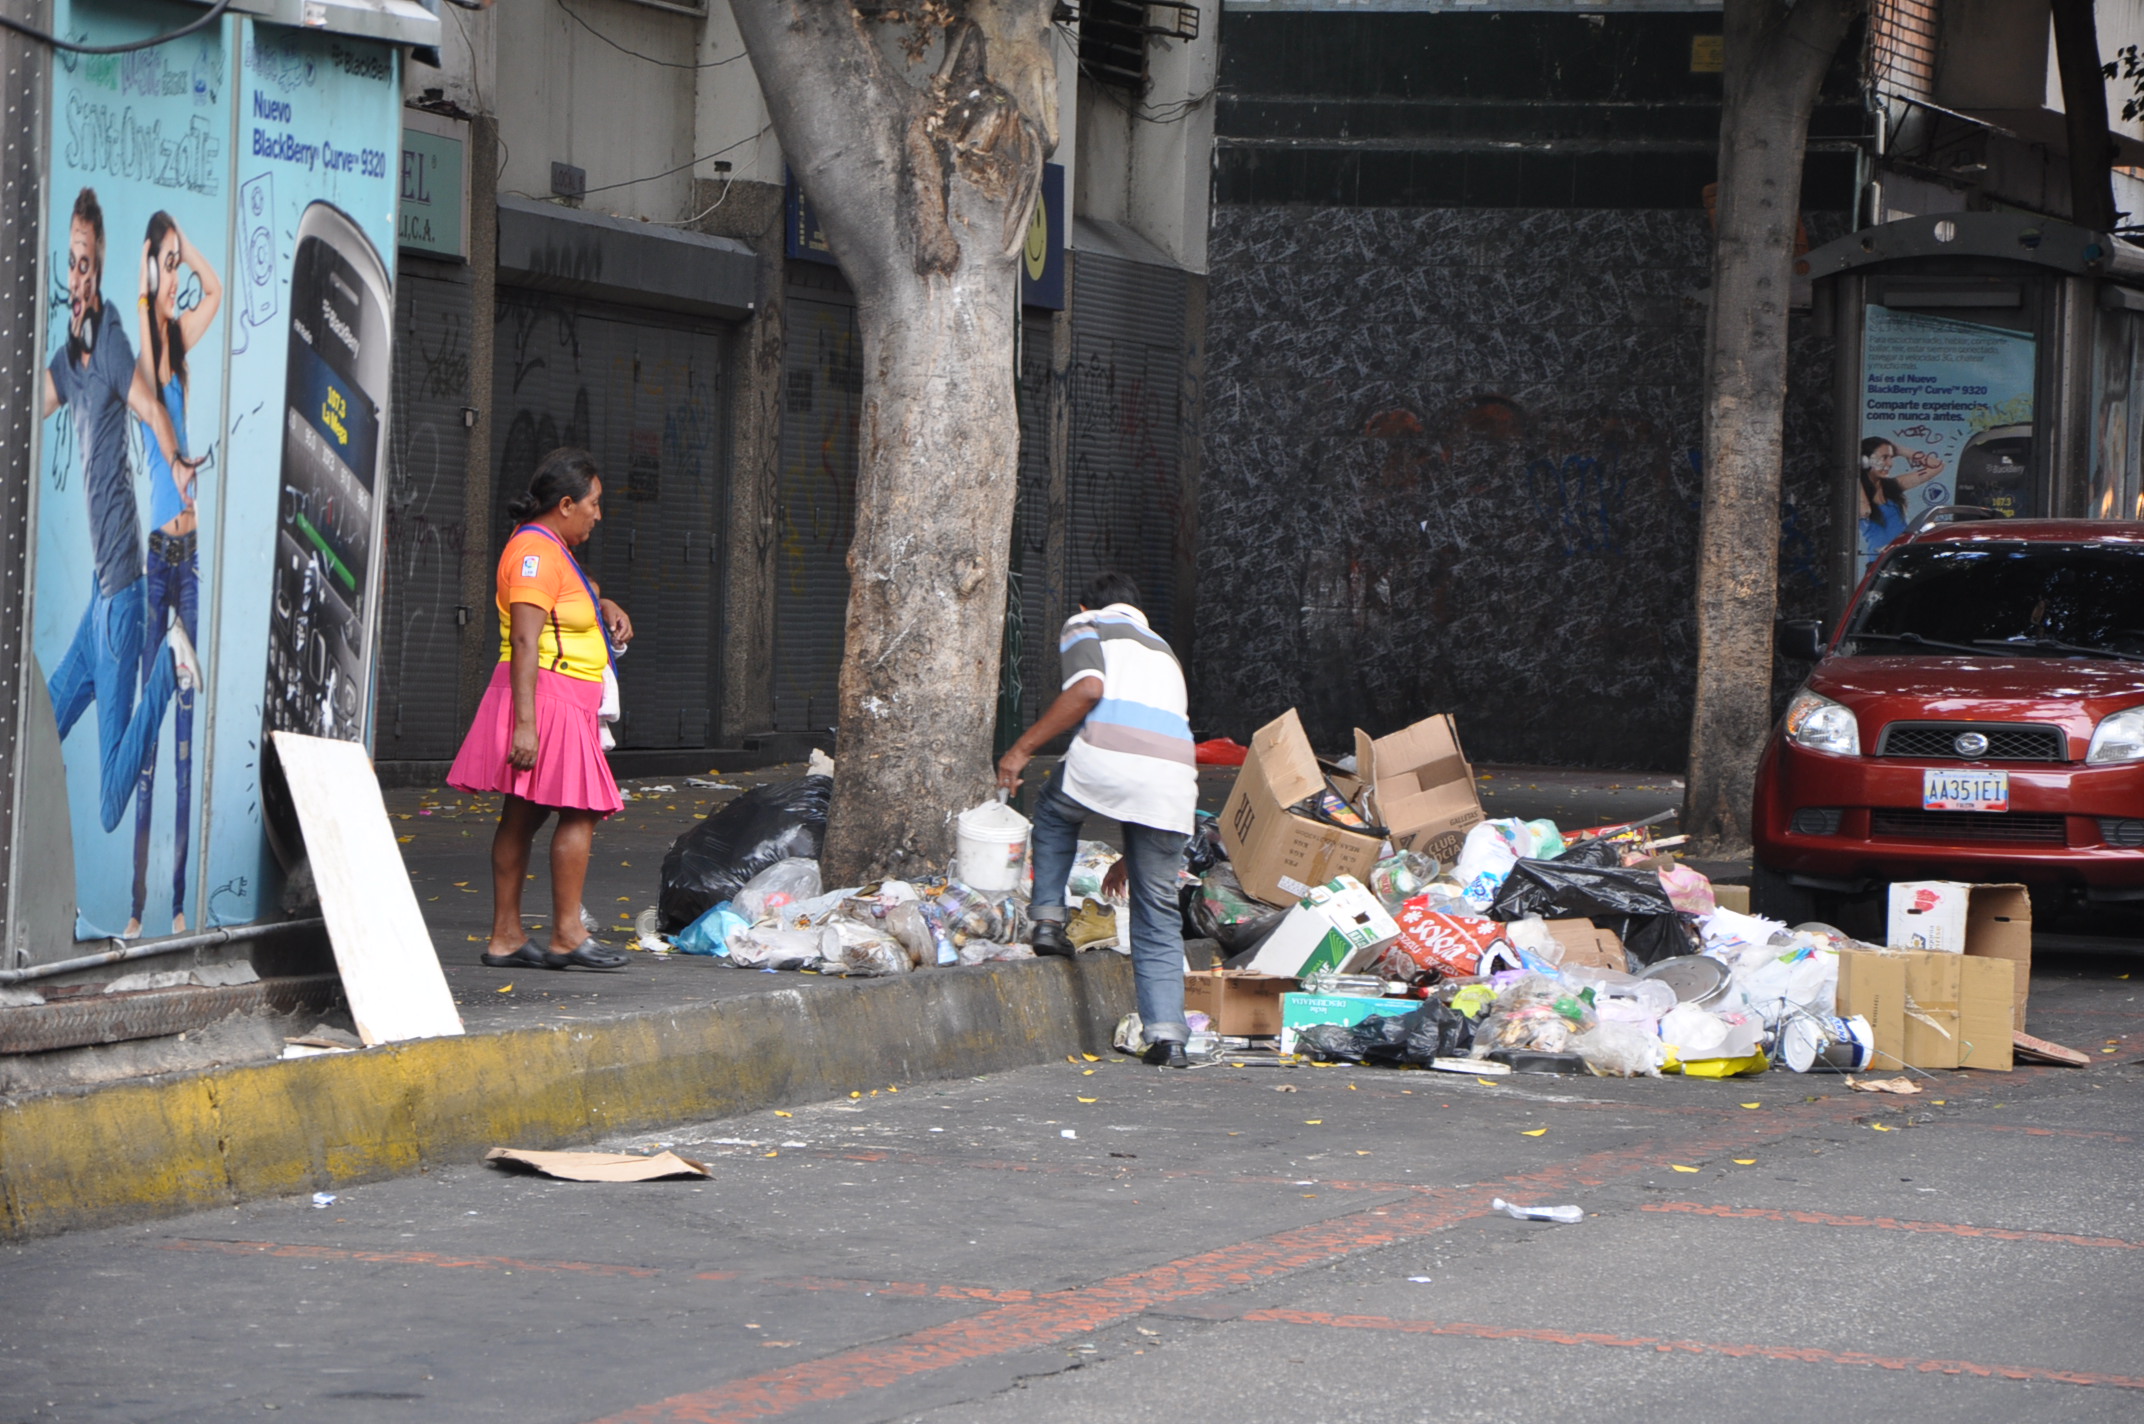 FOTOS: Revisando la basura a ver qué hay… en pleno centro de Caracas